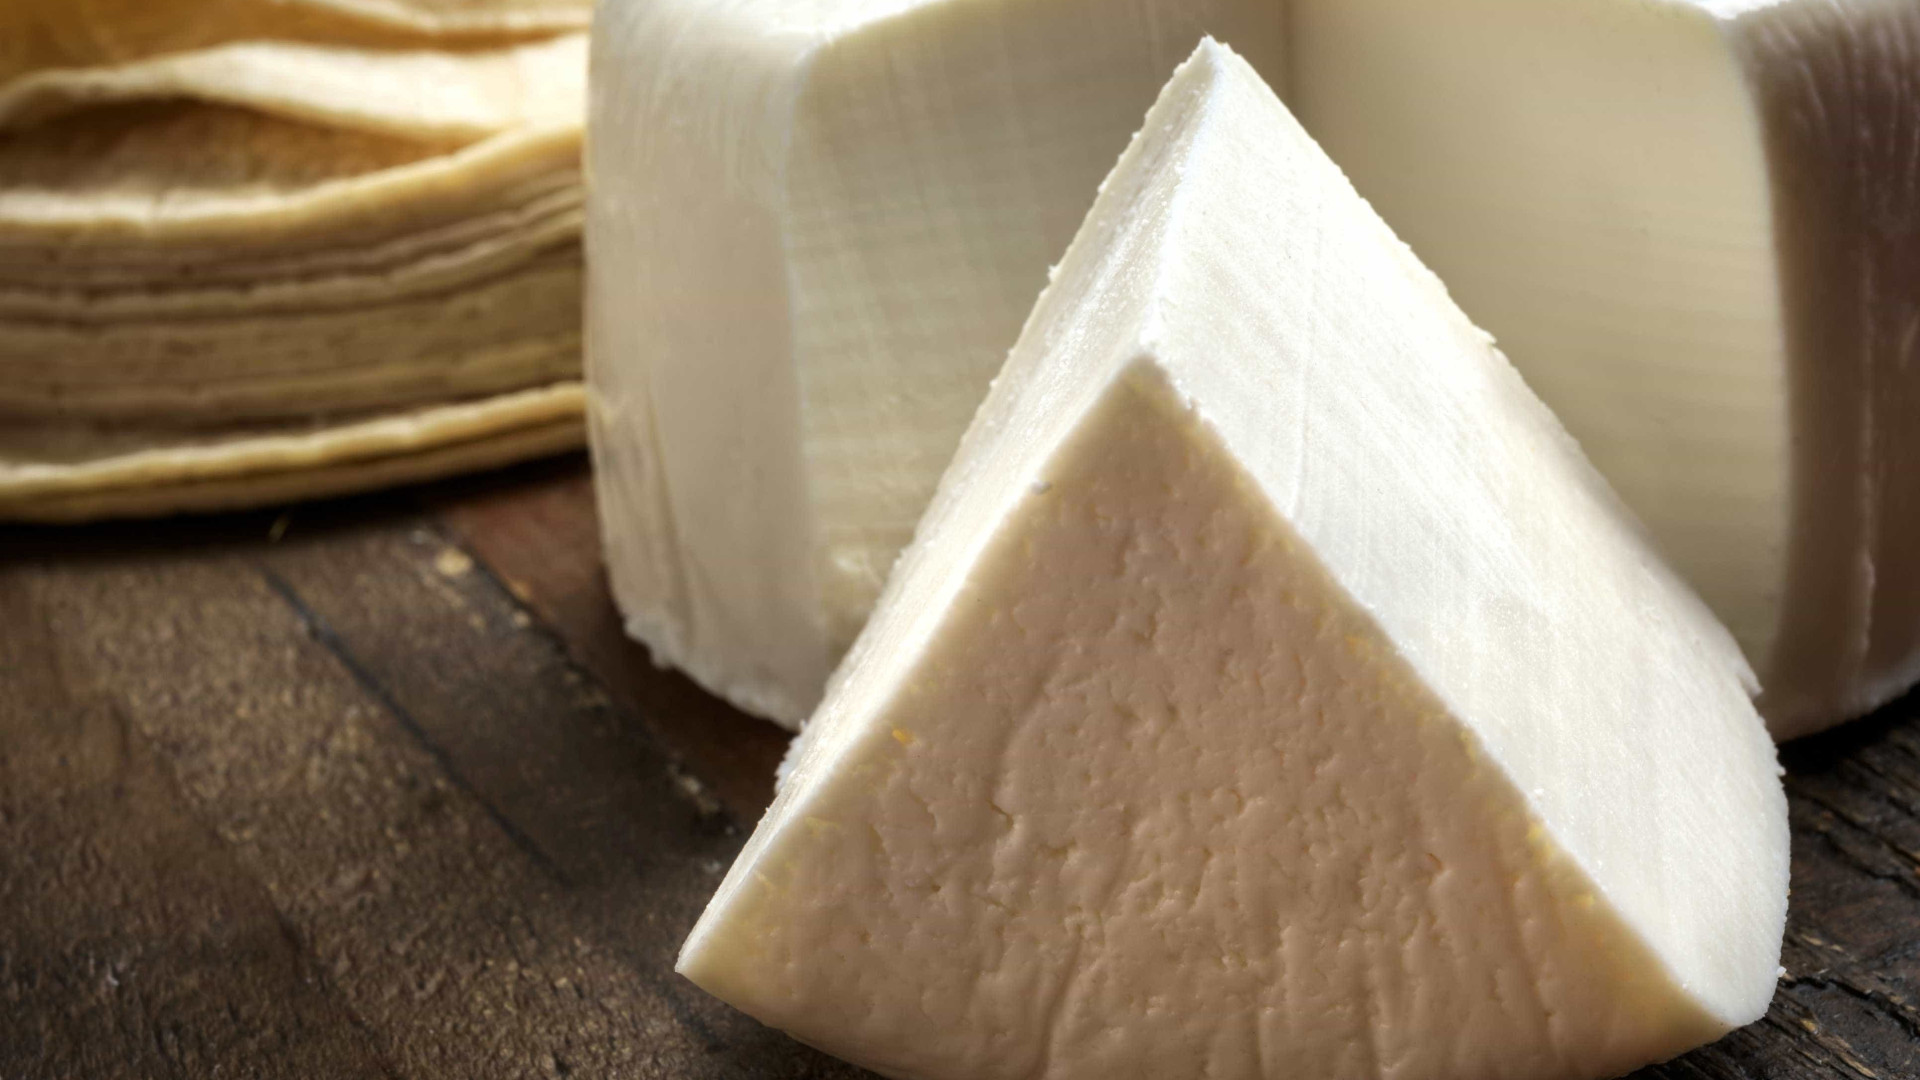 Fabricantes de queijo em Minas adaptam produção para lidar com leite mais caro